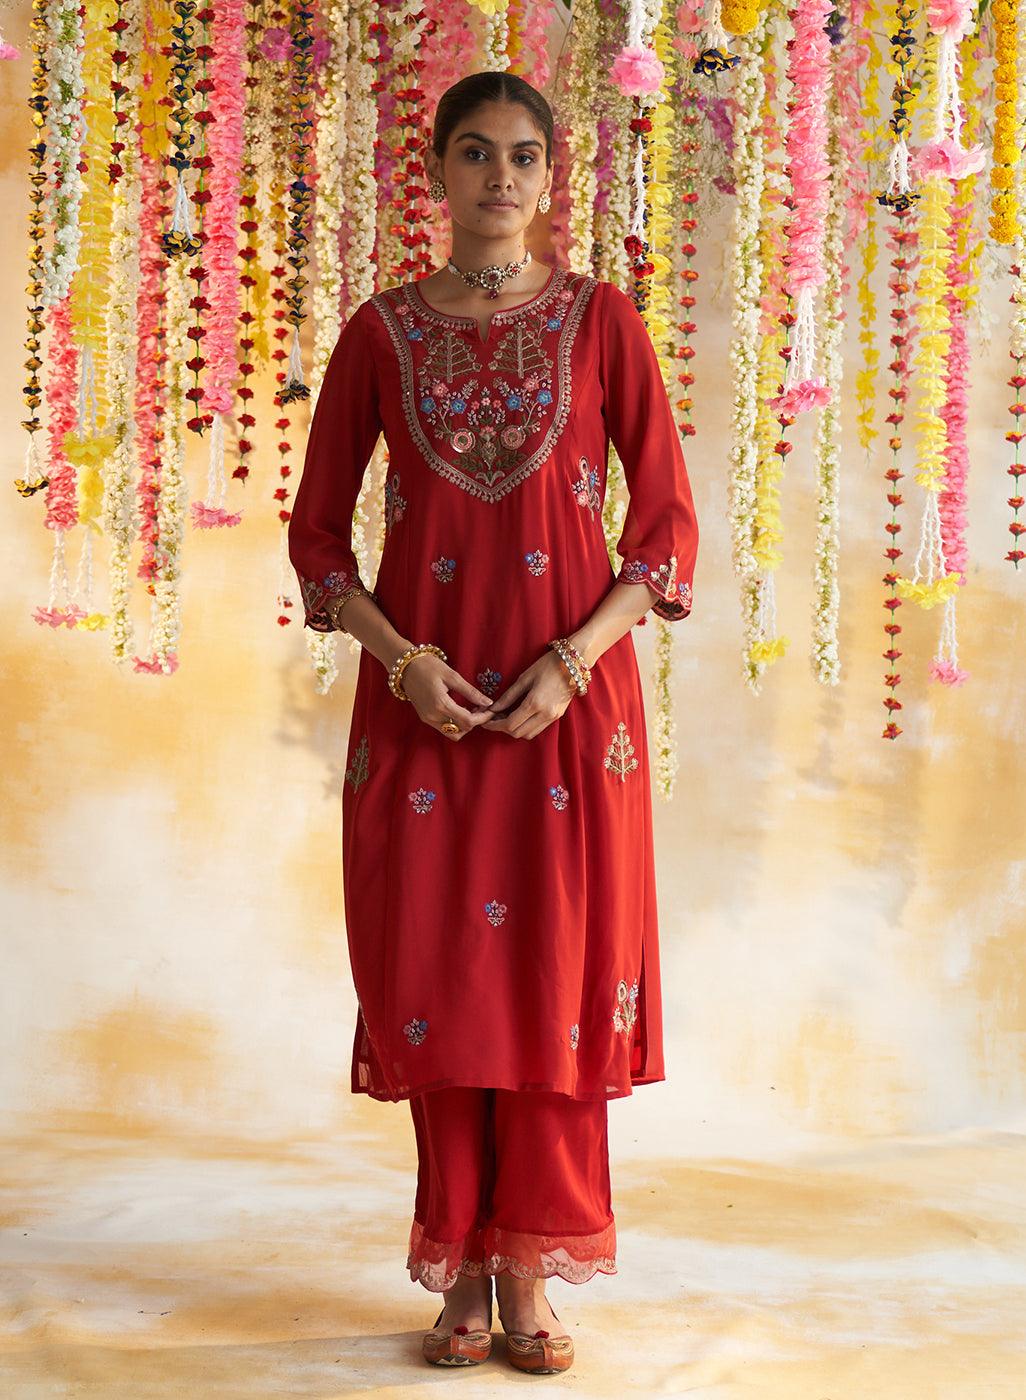 Teej Dress Up: Top 5 Teej Saree Outfit Ideas | Julahaa Sarees - Julahaa